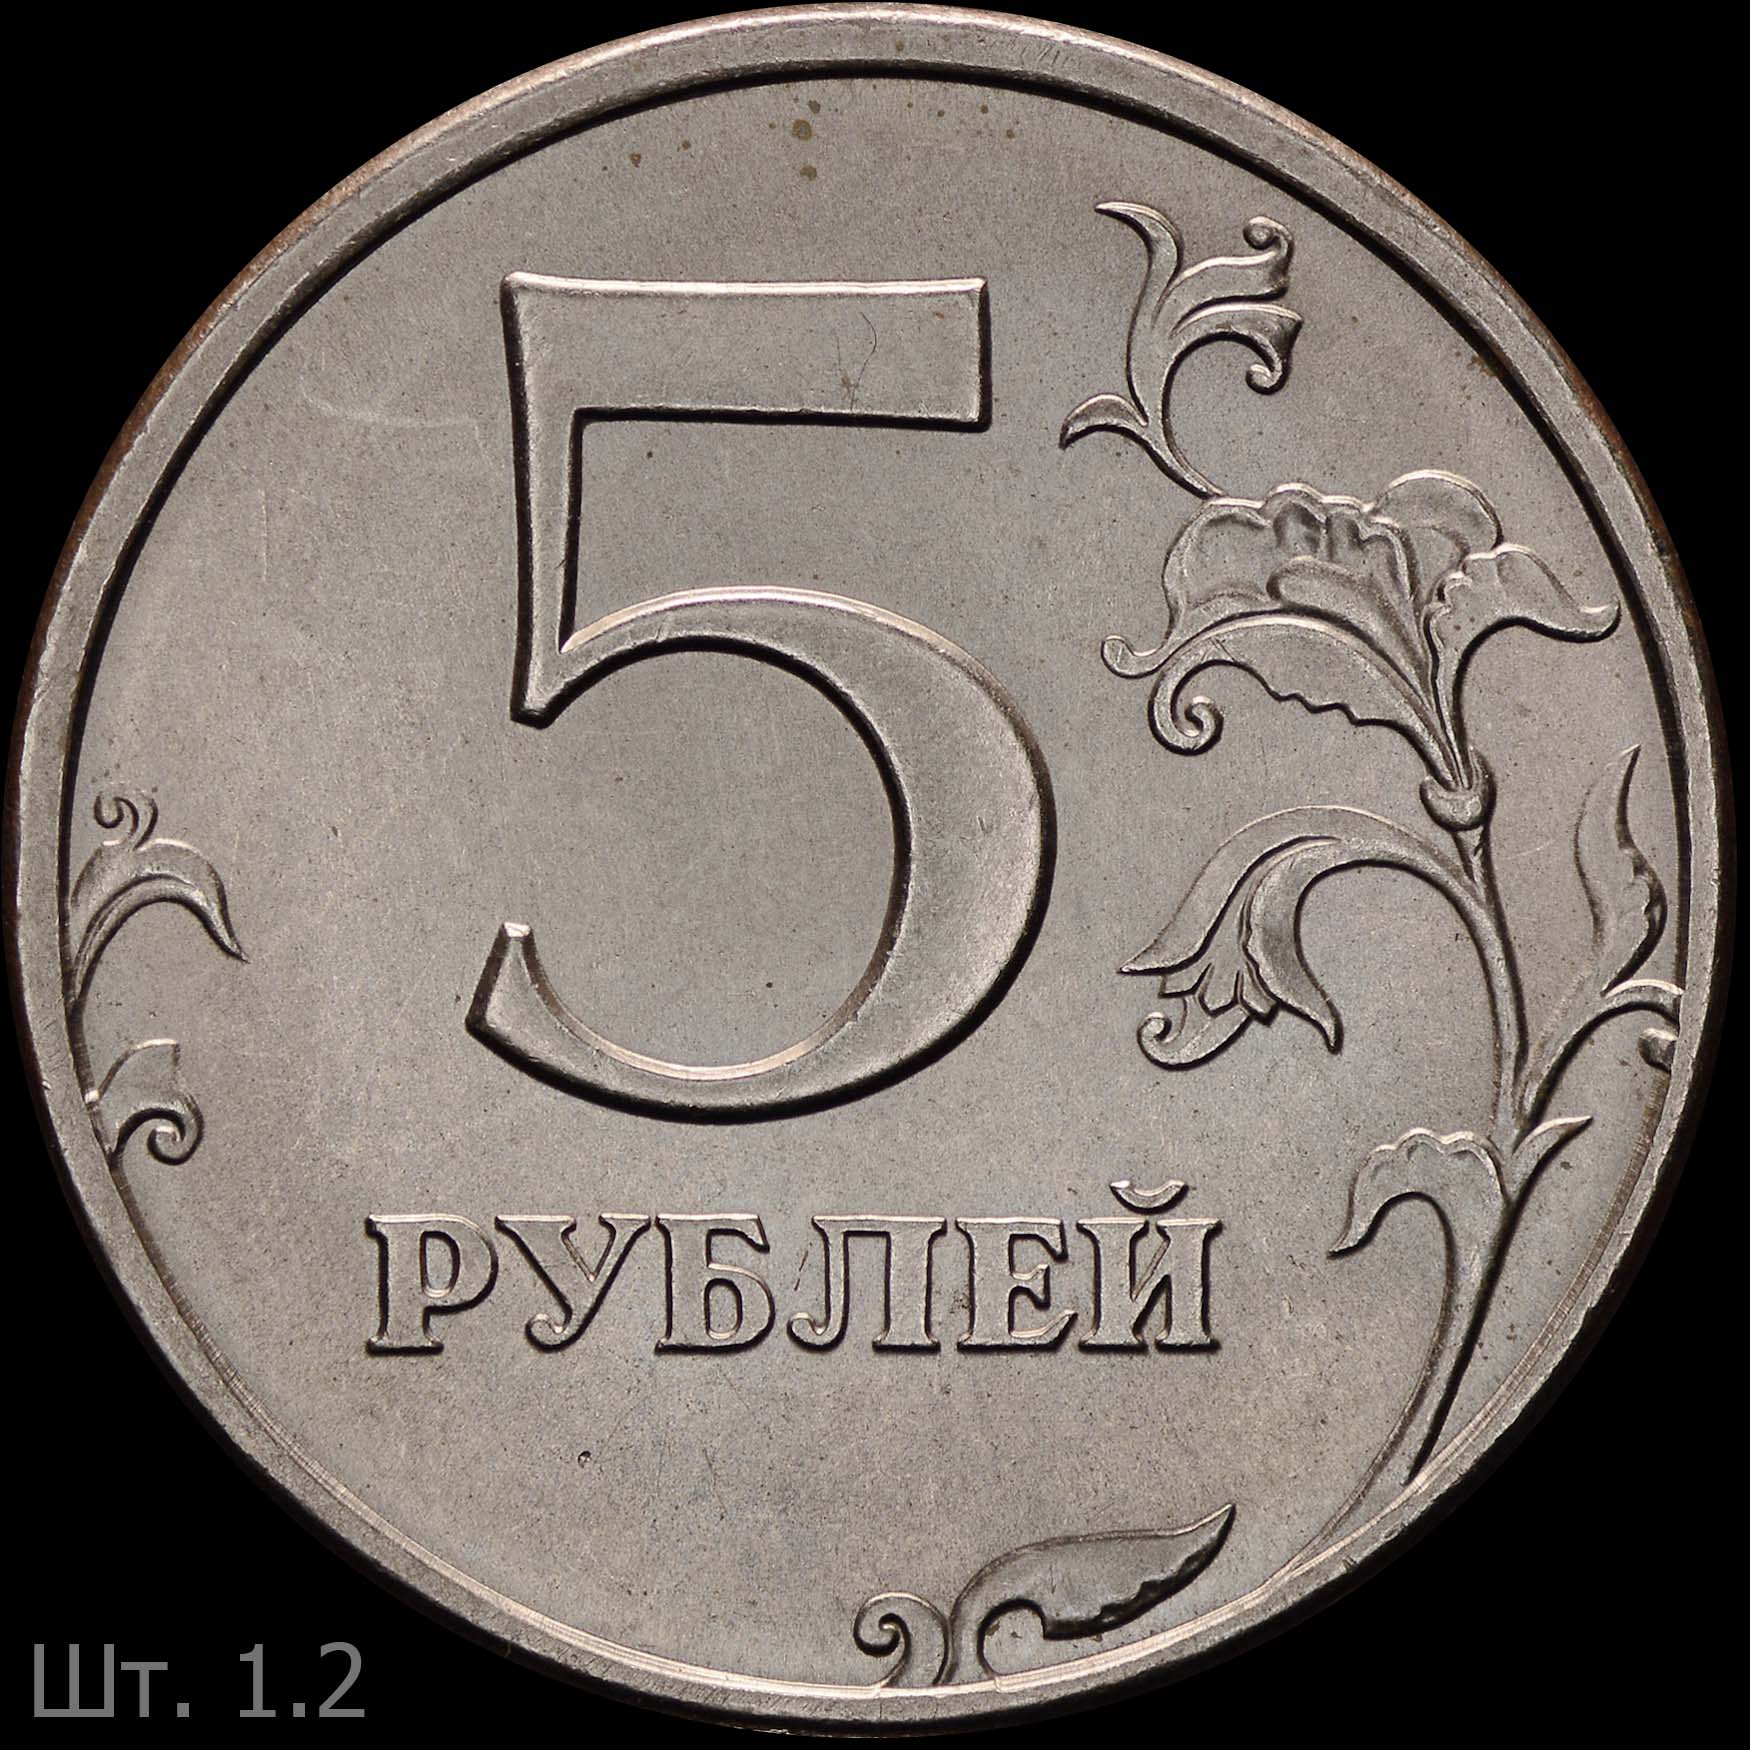 5 рублей россии 1997. 5 Рублей 1997 года СПМД штемпель 2.3. Пять рублей Санкт-Петербургский монетный двор 1997. 5 Рублей 1997 года. Пять рублей 1997 года.